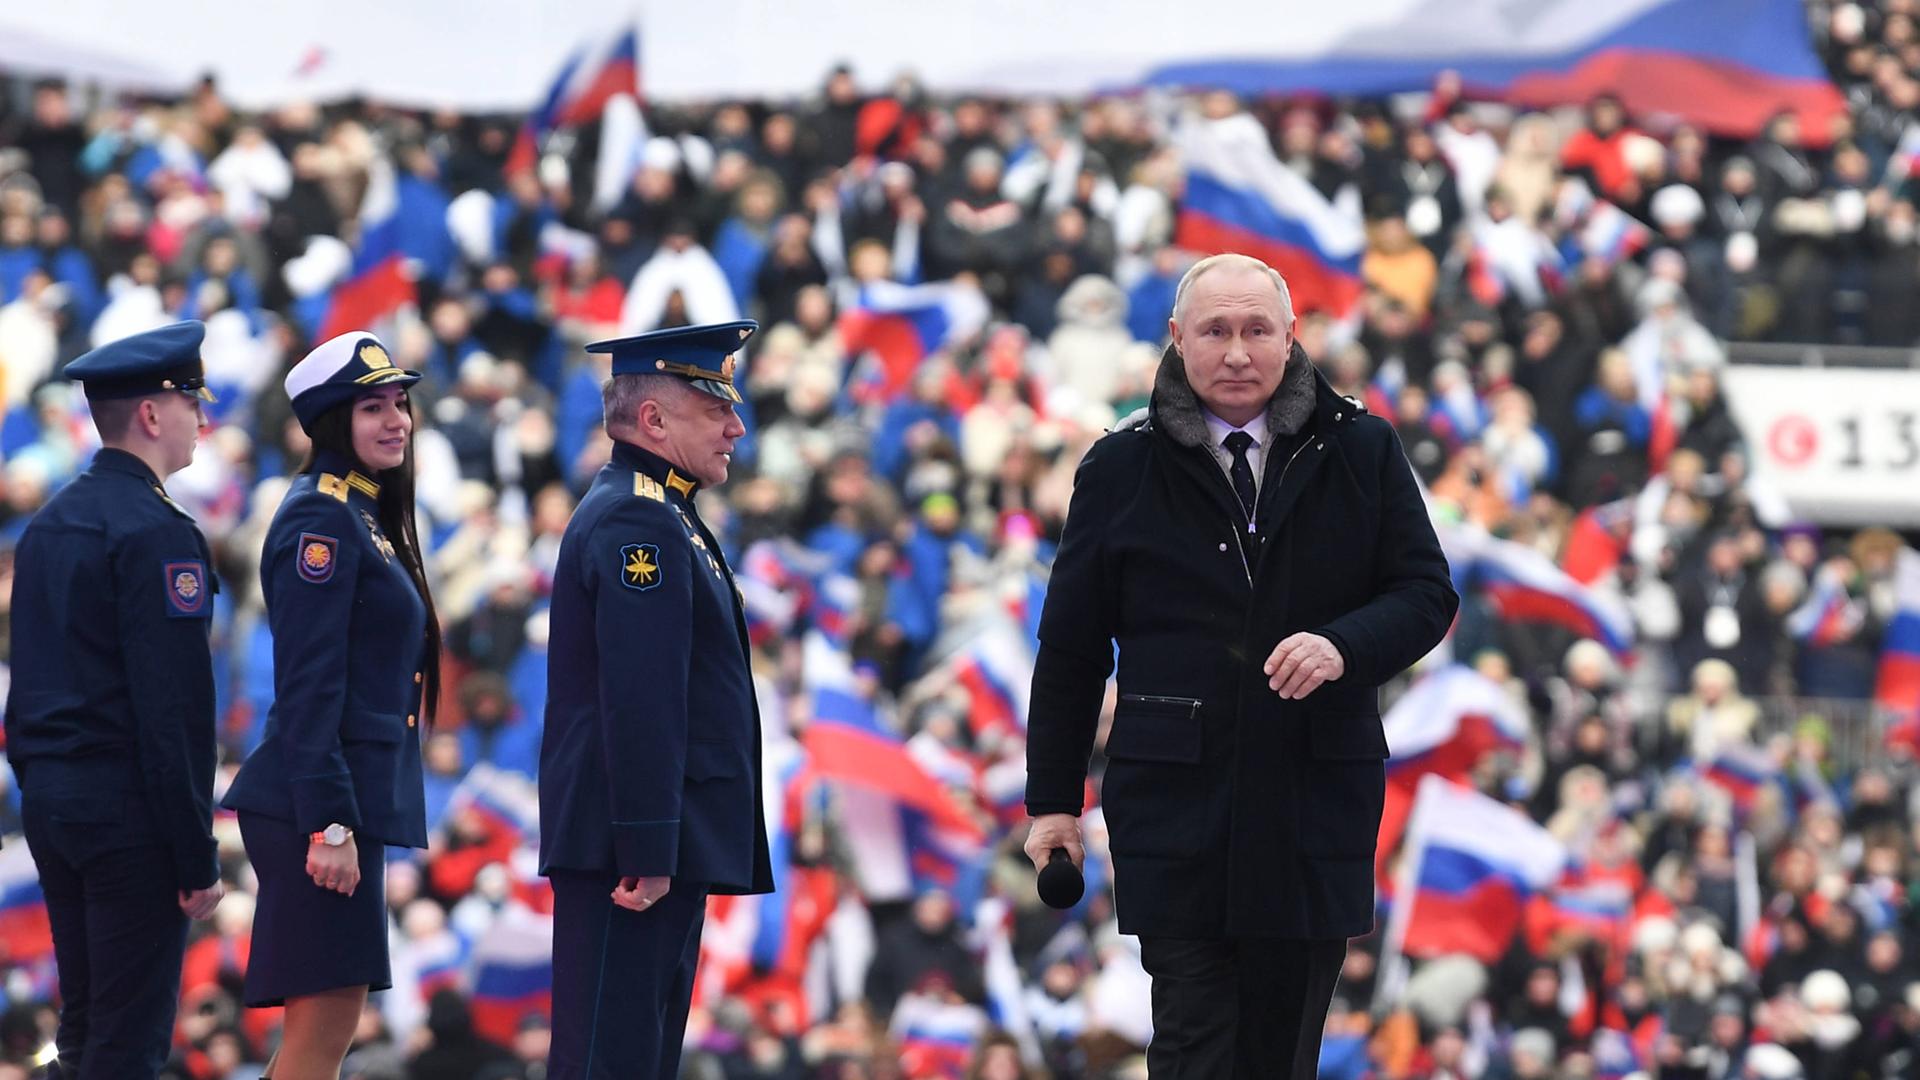 Präsident Putin geht an russischen Soldaten auf einer Bühne vorbei. Im Hintergrund schwenken die Zuschauer russische Fahnen.